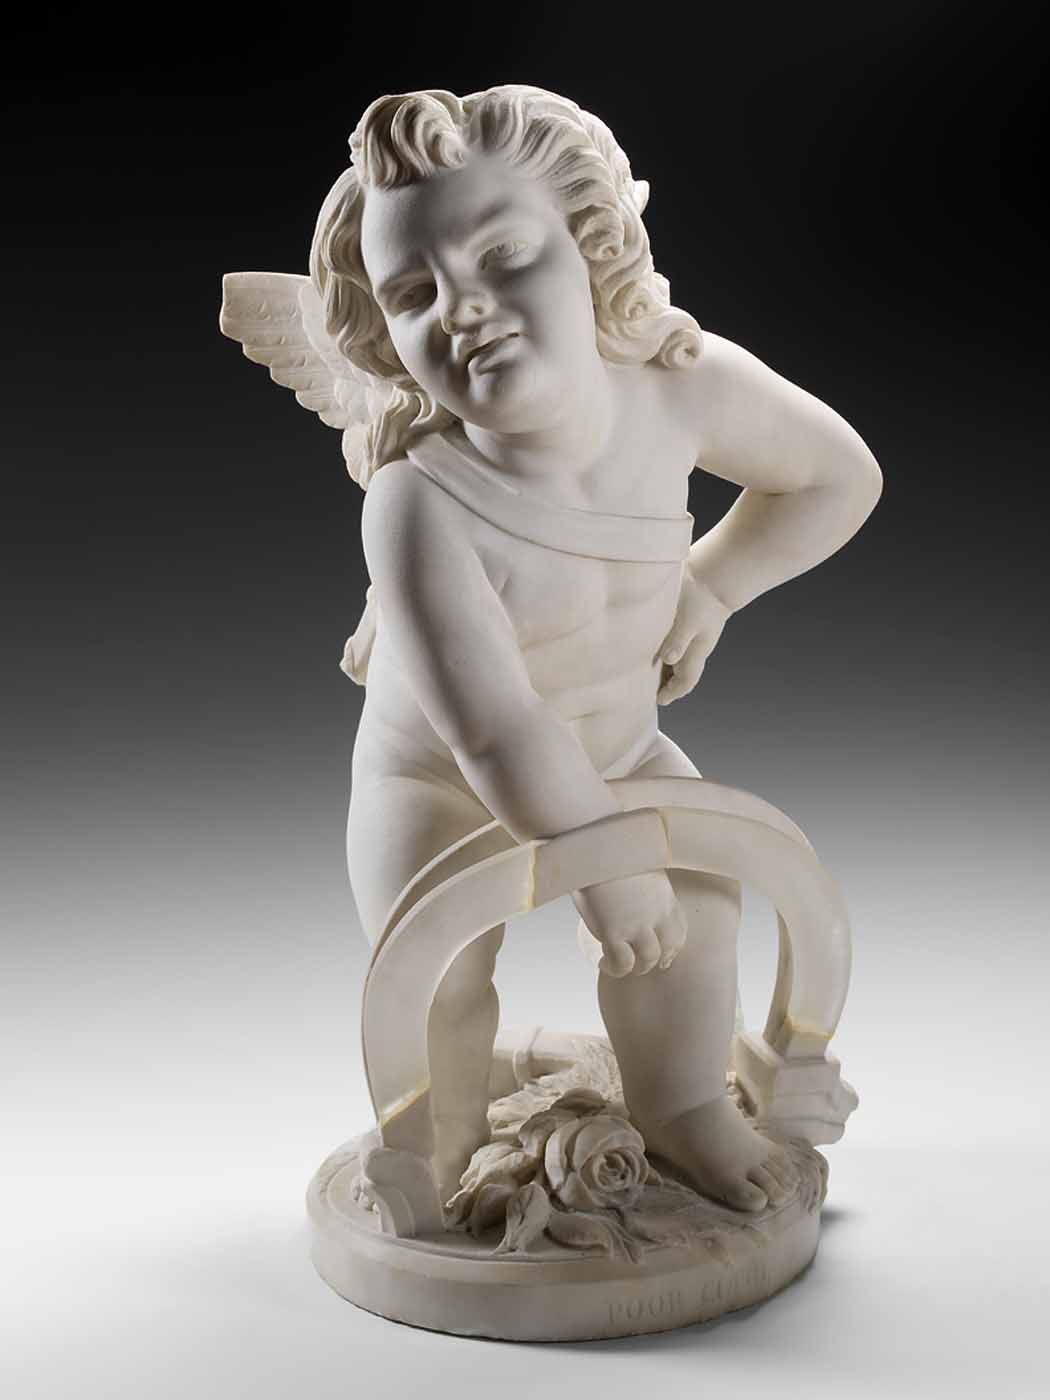 hoạ-sĩ-nổi-tiếng-9a-Poor-Cupid-1876-elleman